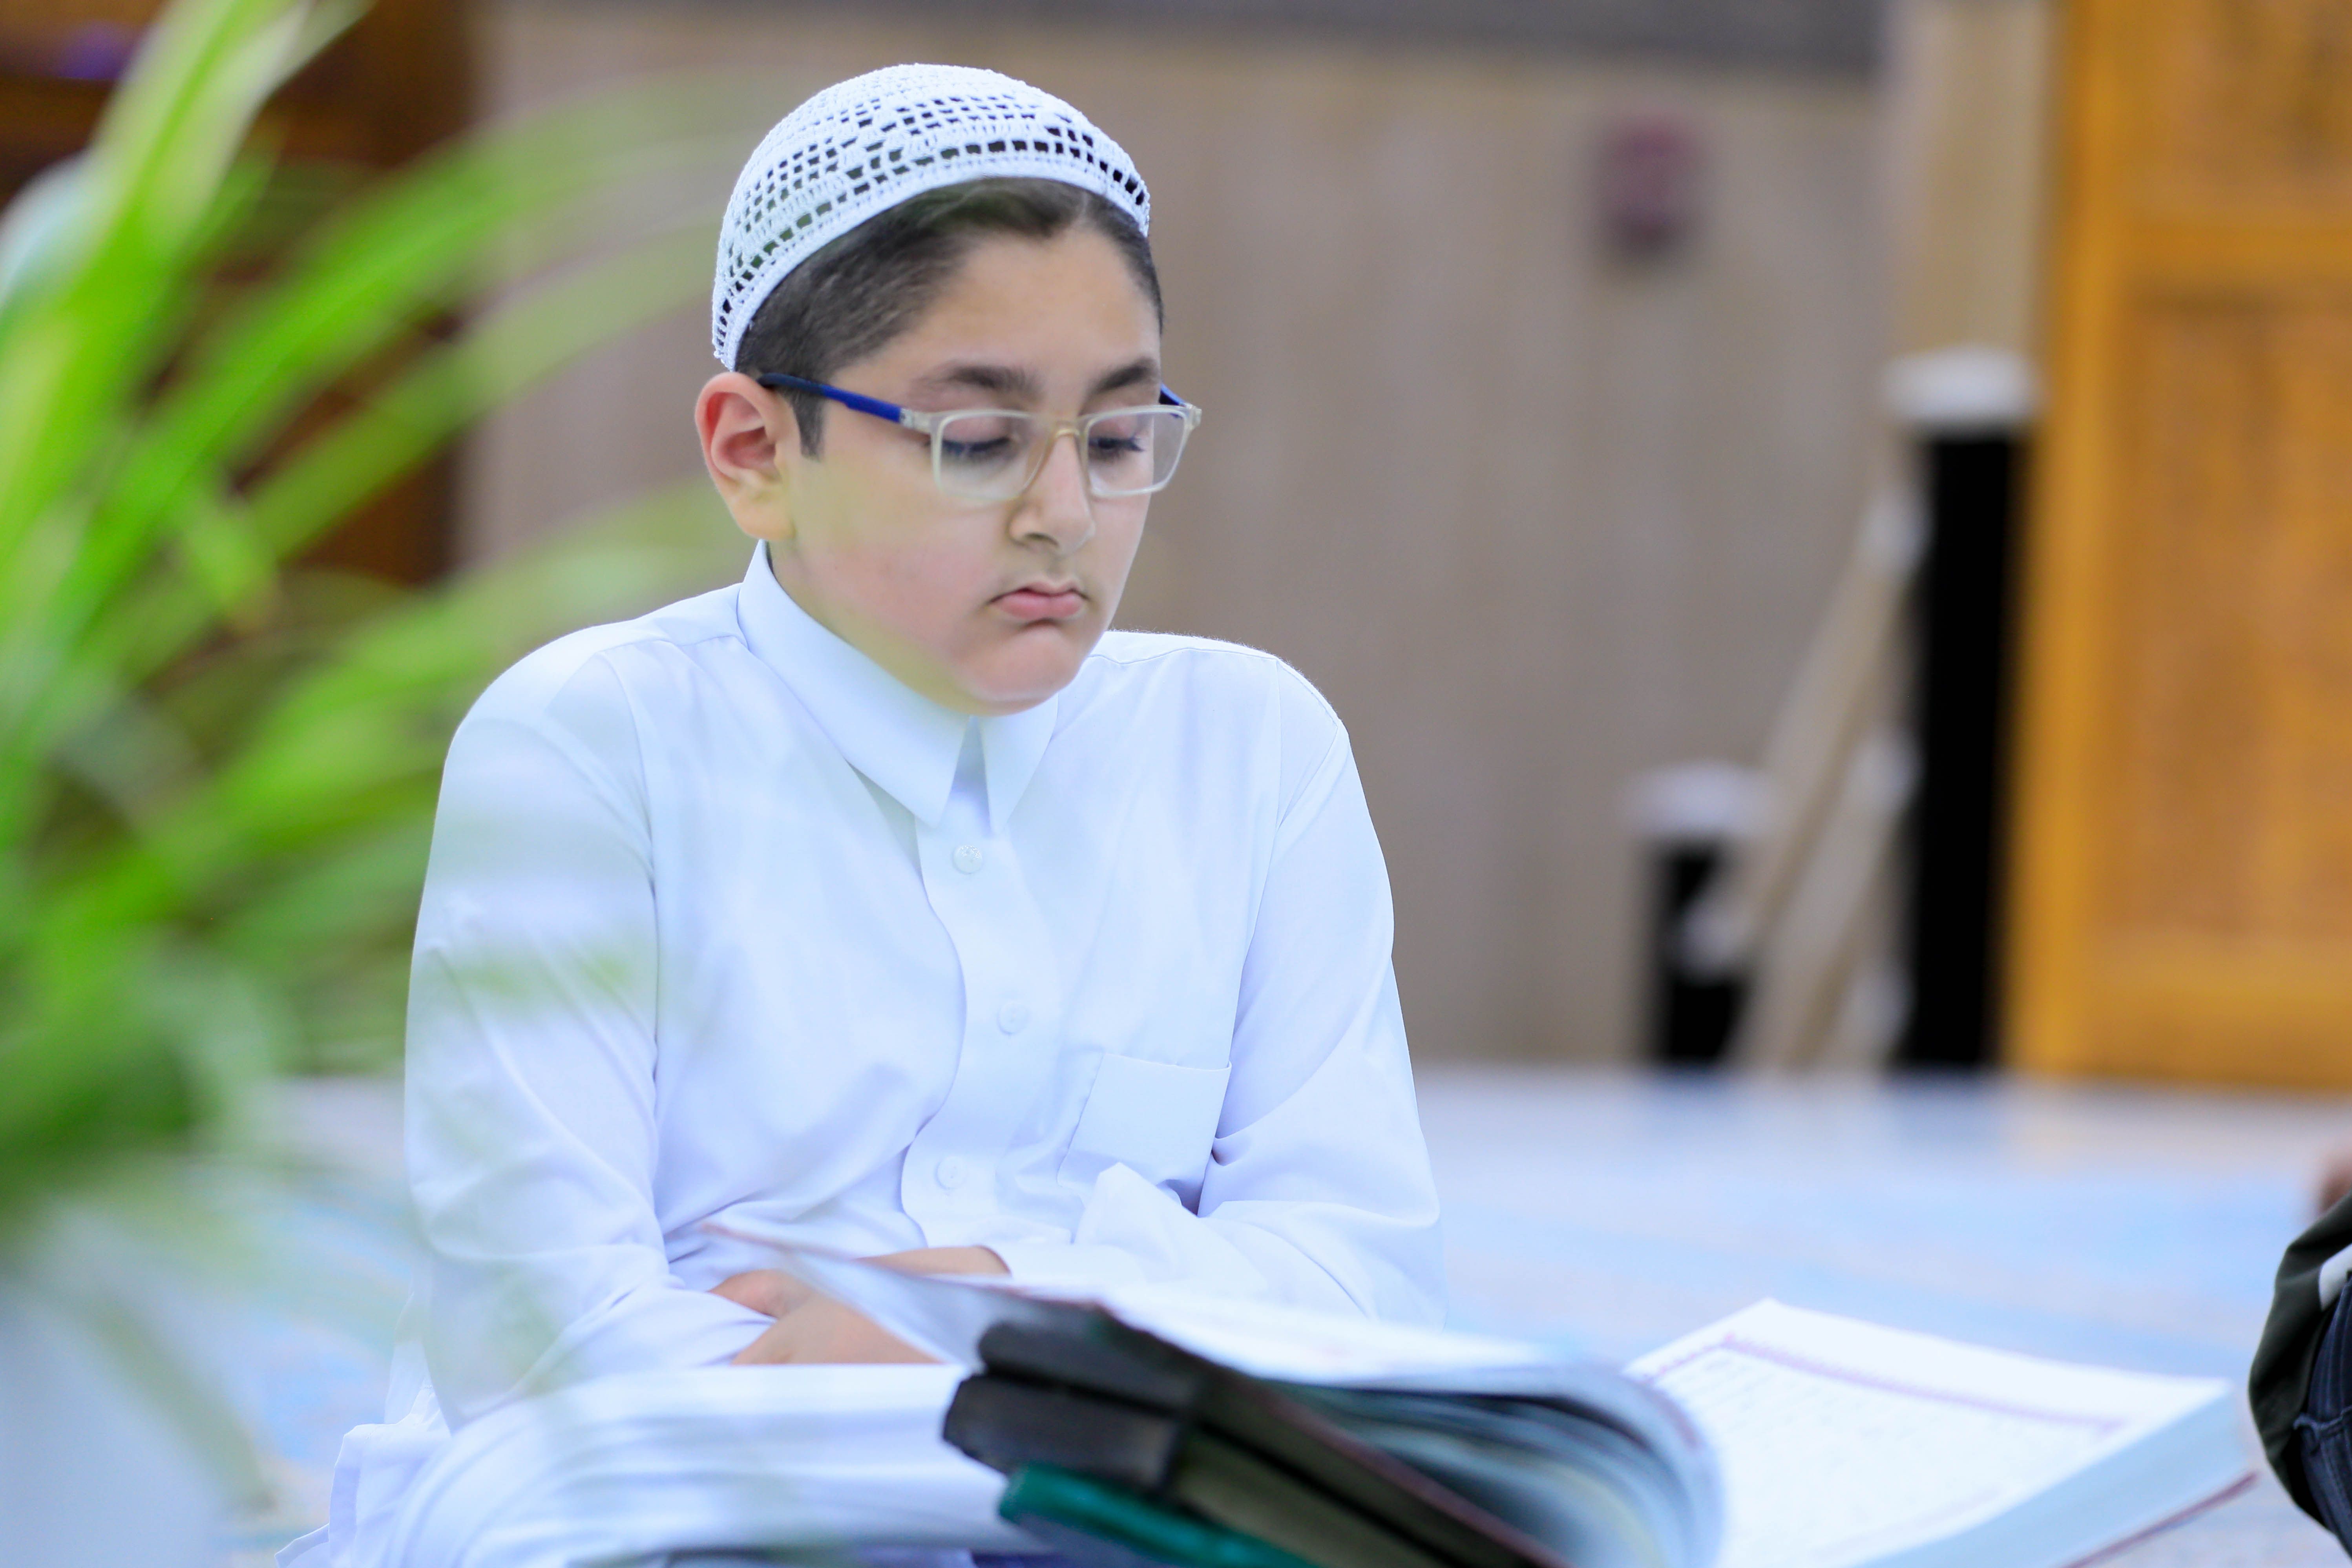 حناجر طلاب المعهد تصدح بآيات الله حفظًا في مقام الإمام المهدي (عج)